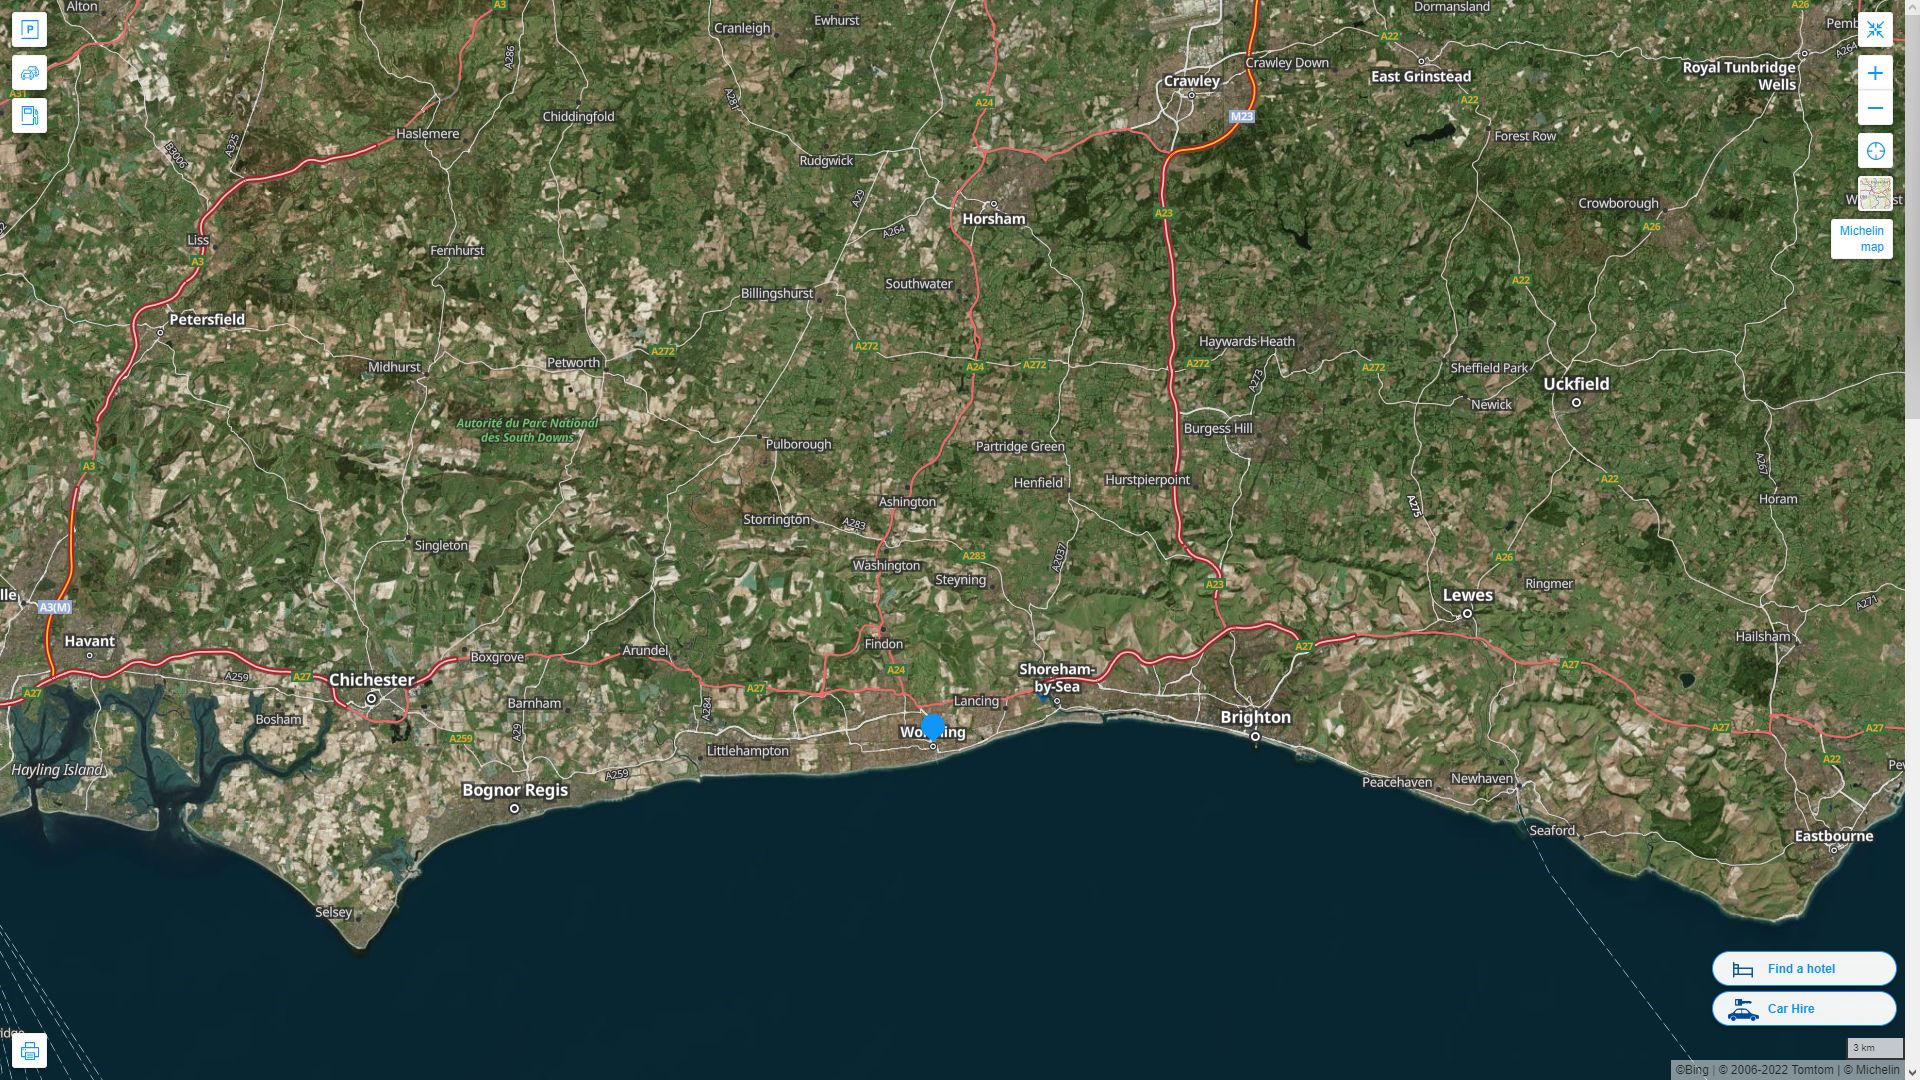 Worthing Royaume Uni Autoroute et carte routiere avec vue satellite